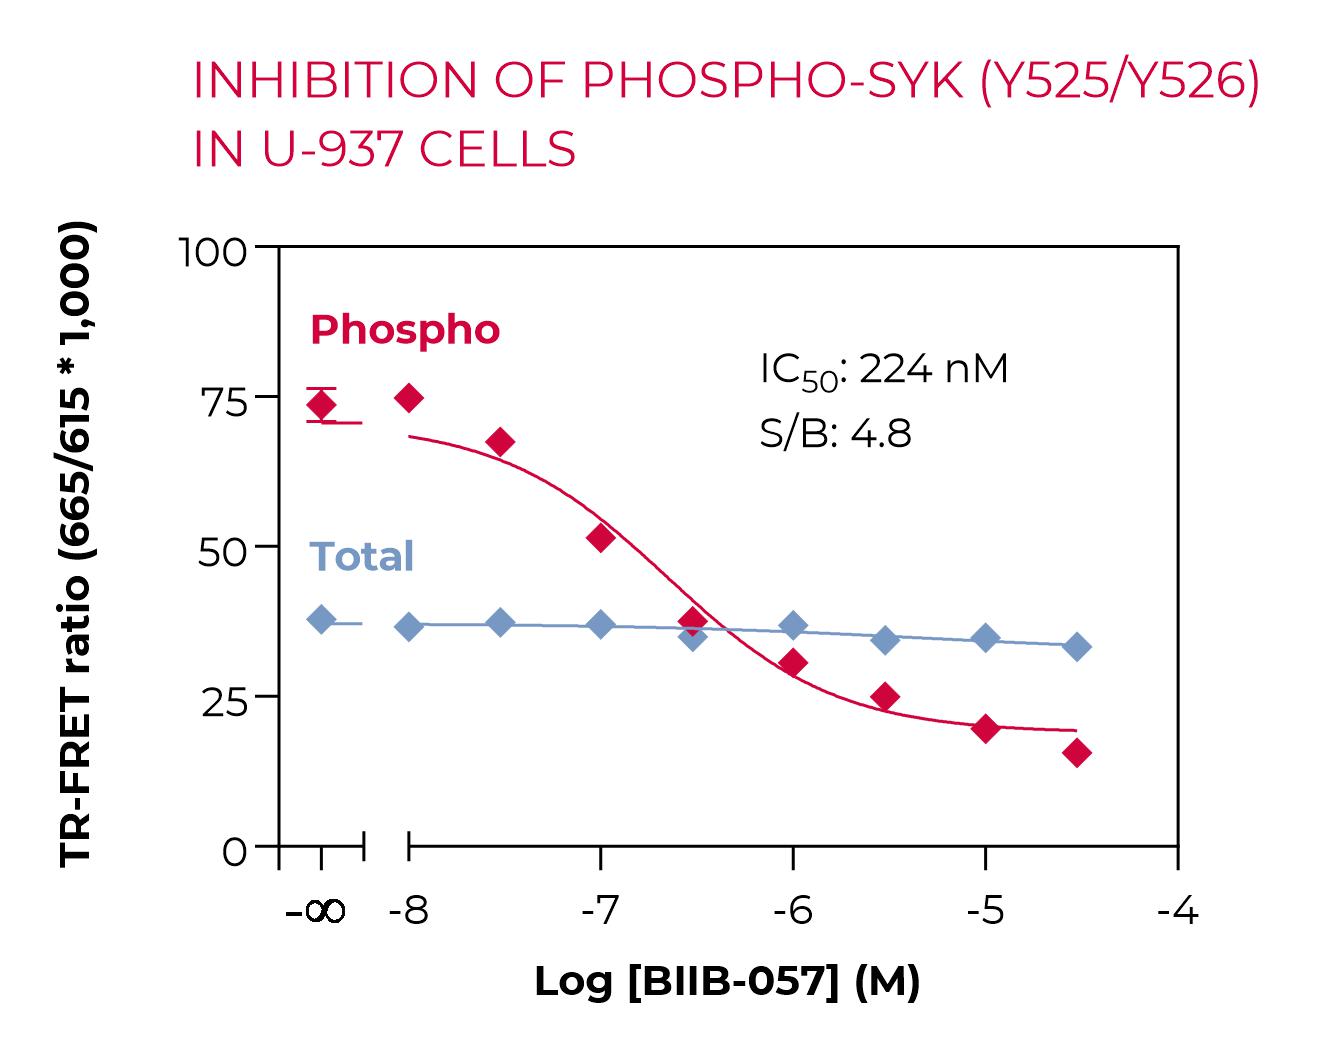 Inhibition of Phospho-SYK (Y525/Y526) in U-937 cells